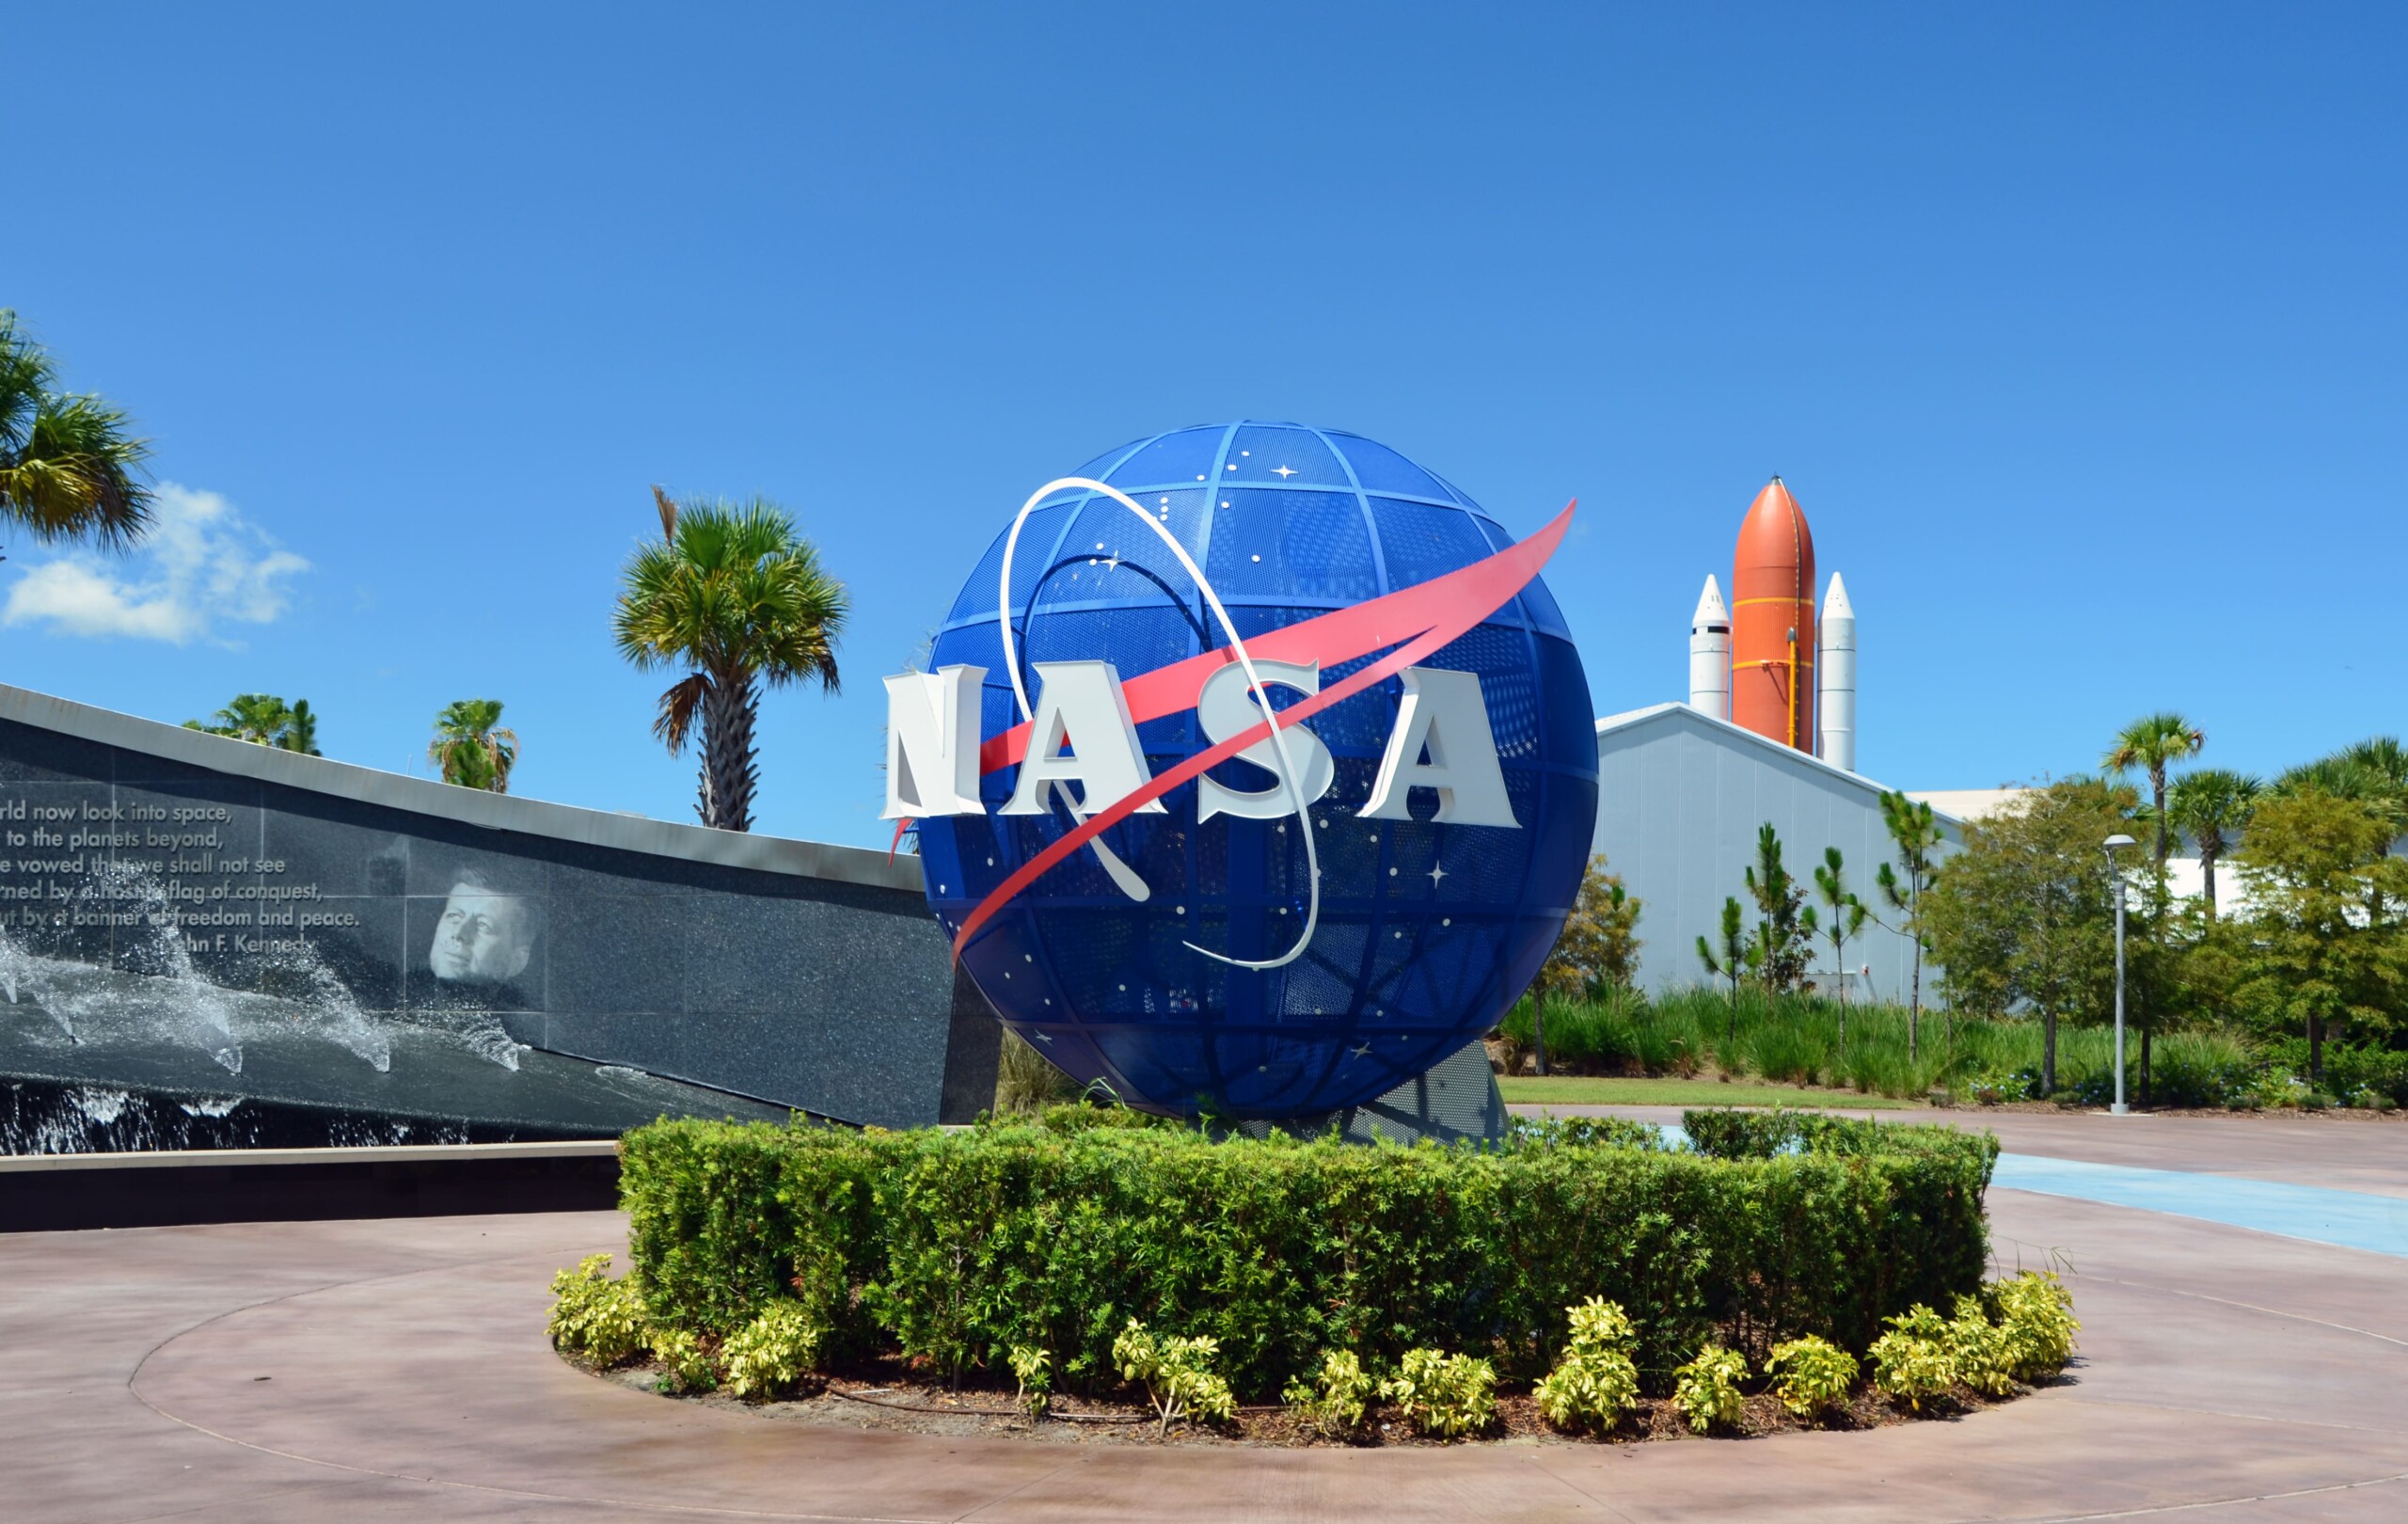 Visite o Kennedy Space Center: 5 dicas para um tour inesquecível | Monumento do Kennedy Space Center com o logo oficial da Nasa | Conexão123